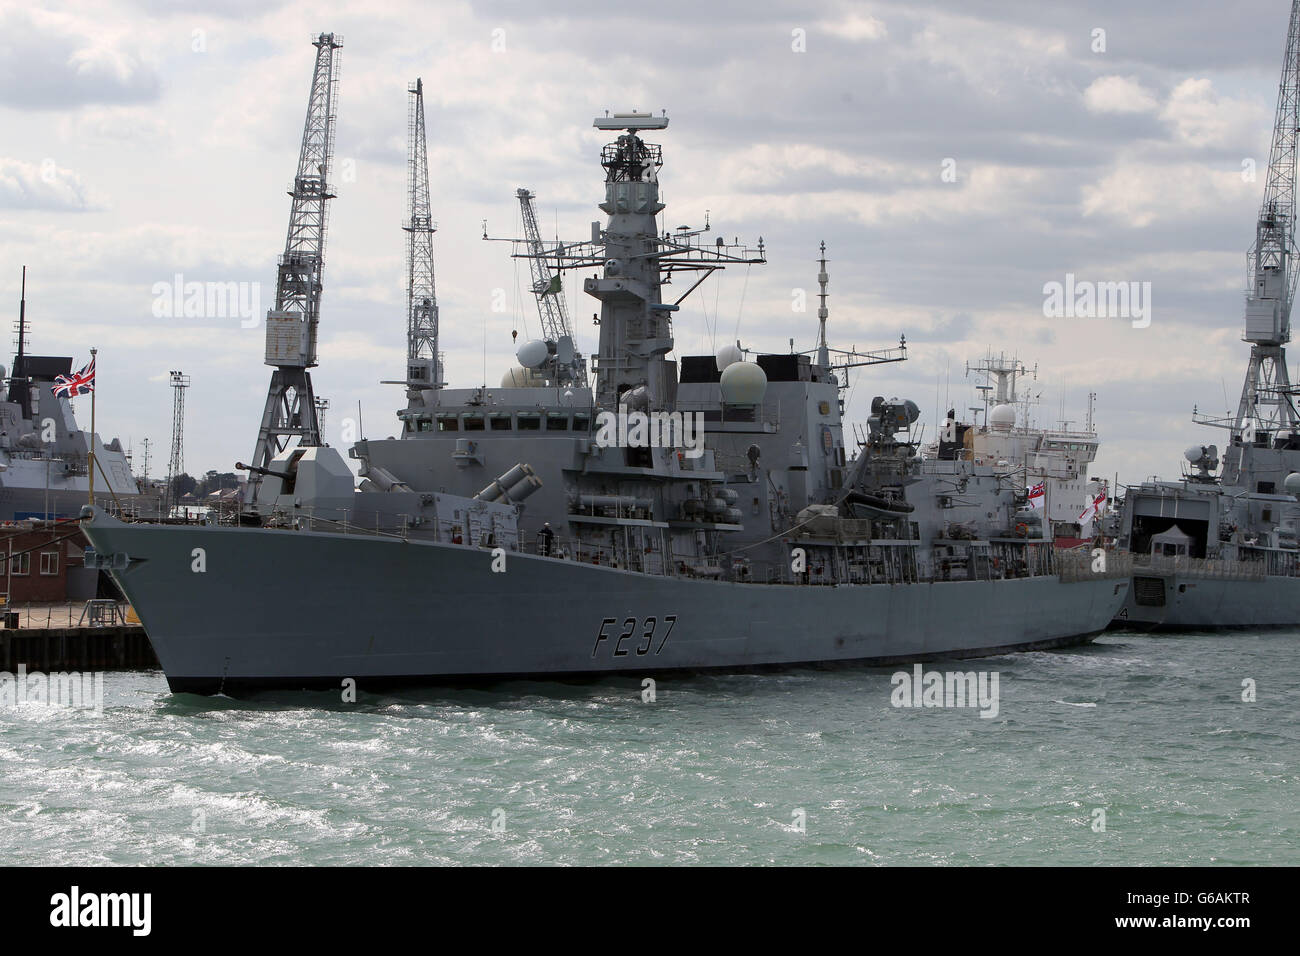 HMS Westminster, frégate de type 23, dans le port naval de Portsmouth, attendant de naviguer demain pour participer à un exercice d'entraînement Cougar en Méditerranée, le navire se rendra à Gibraltar en route. Banque D'Images